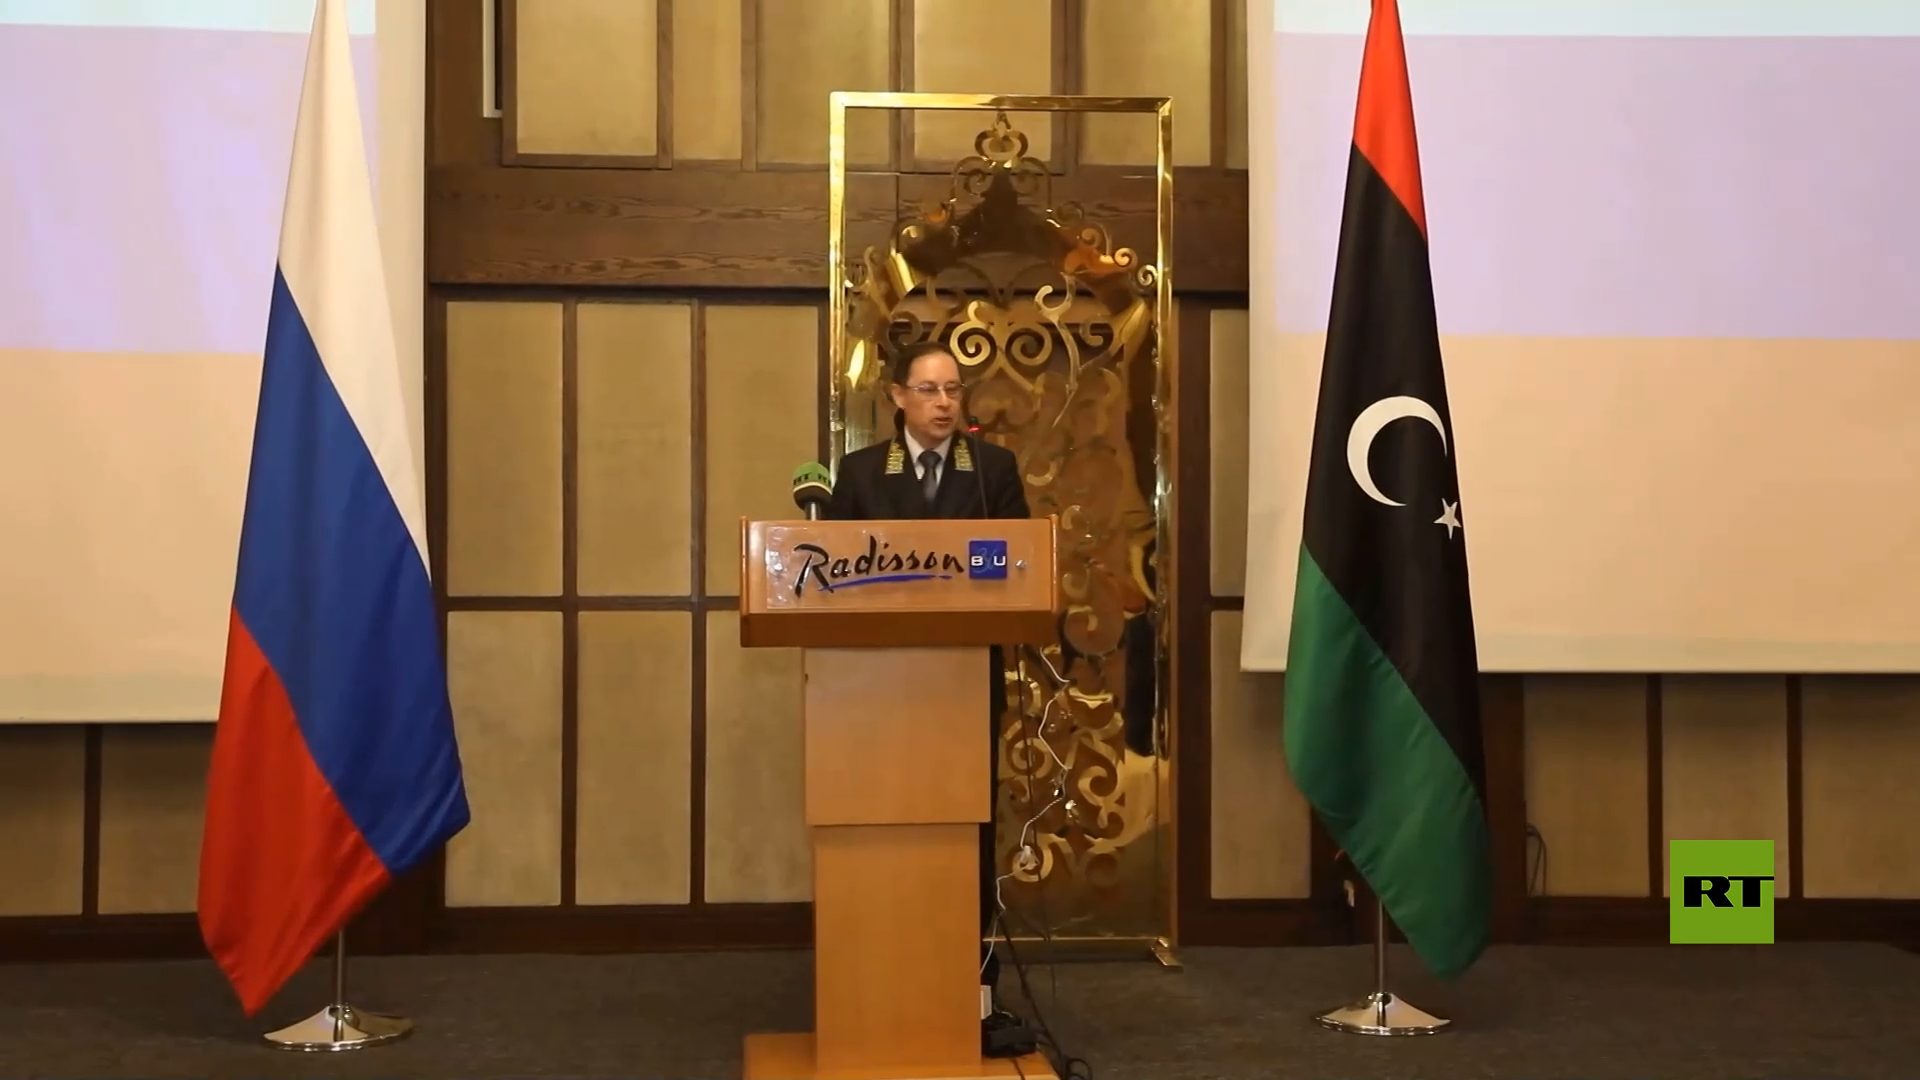 السفارة الروسية في طرابلس تحتفل بيوم روسيا وتؤكد على التعاون والاستقرار في ليبيا